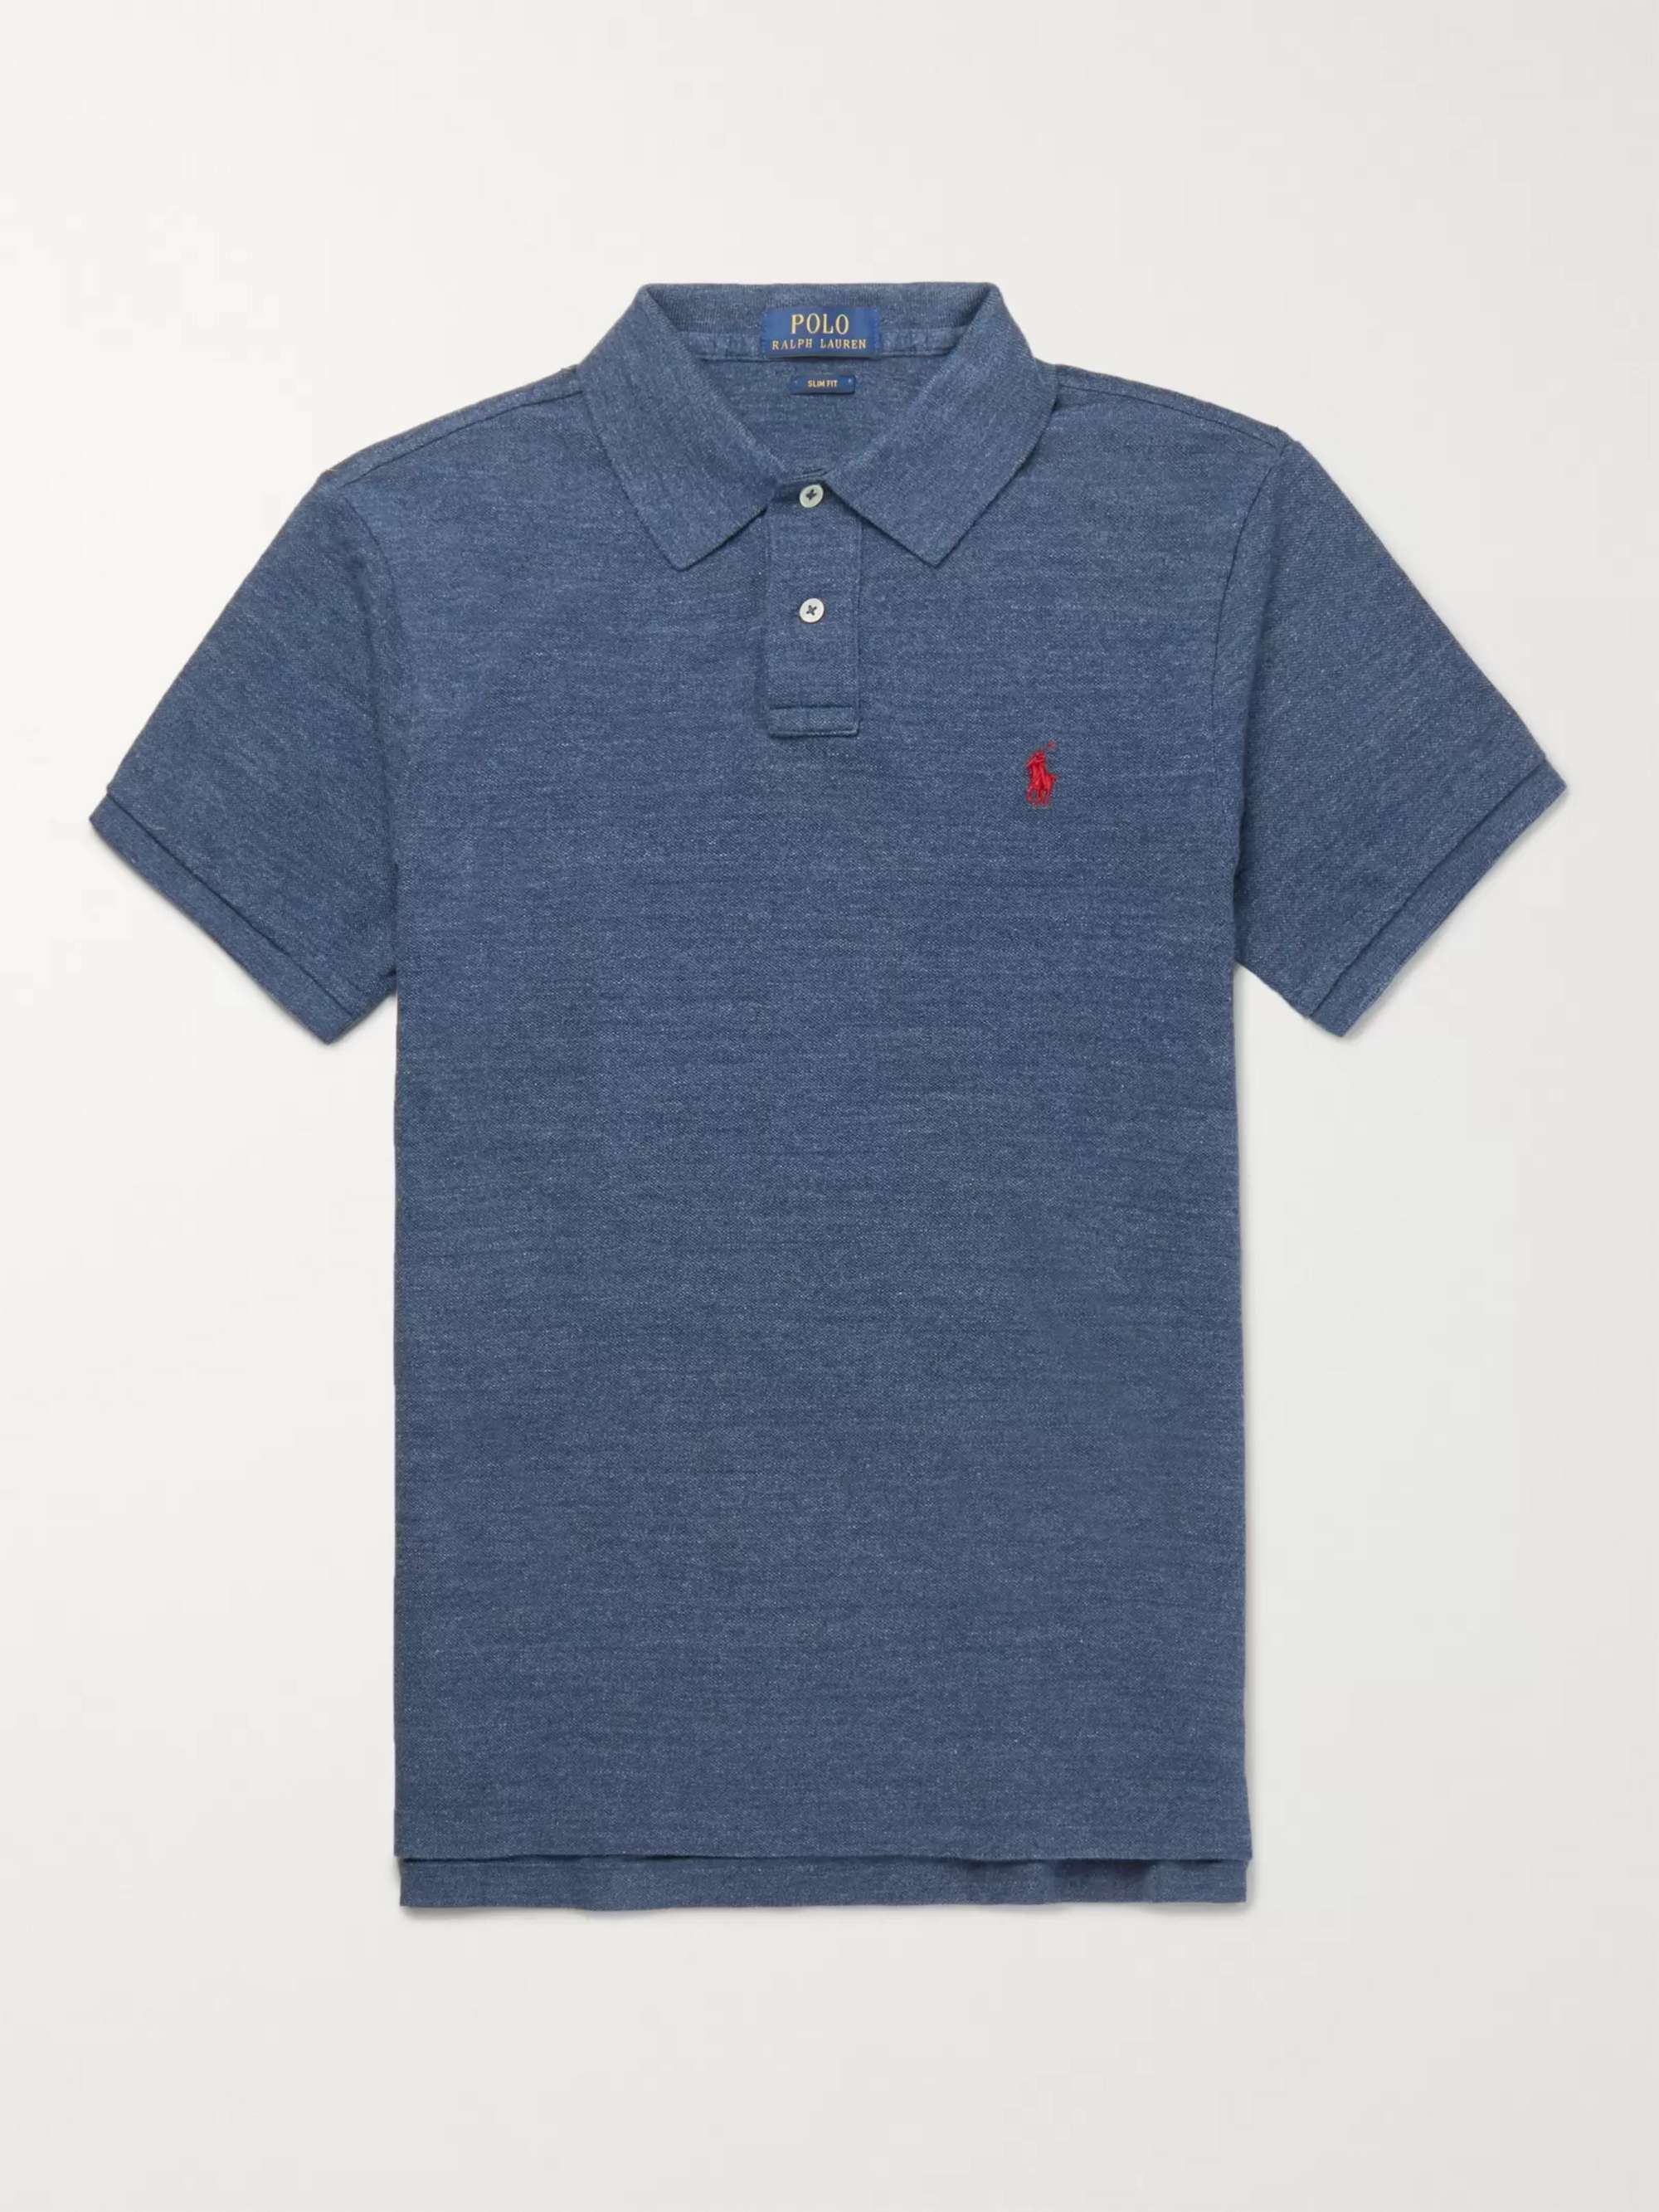 Navy Slim-Fit Mélange Cotton-Piqué Polo Shirt | POLO RALPH LAUREN | MR  PORTER